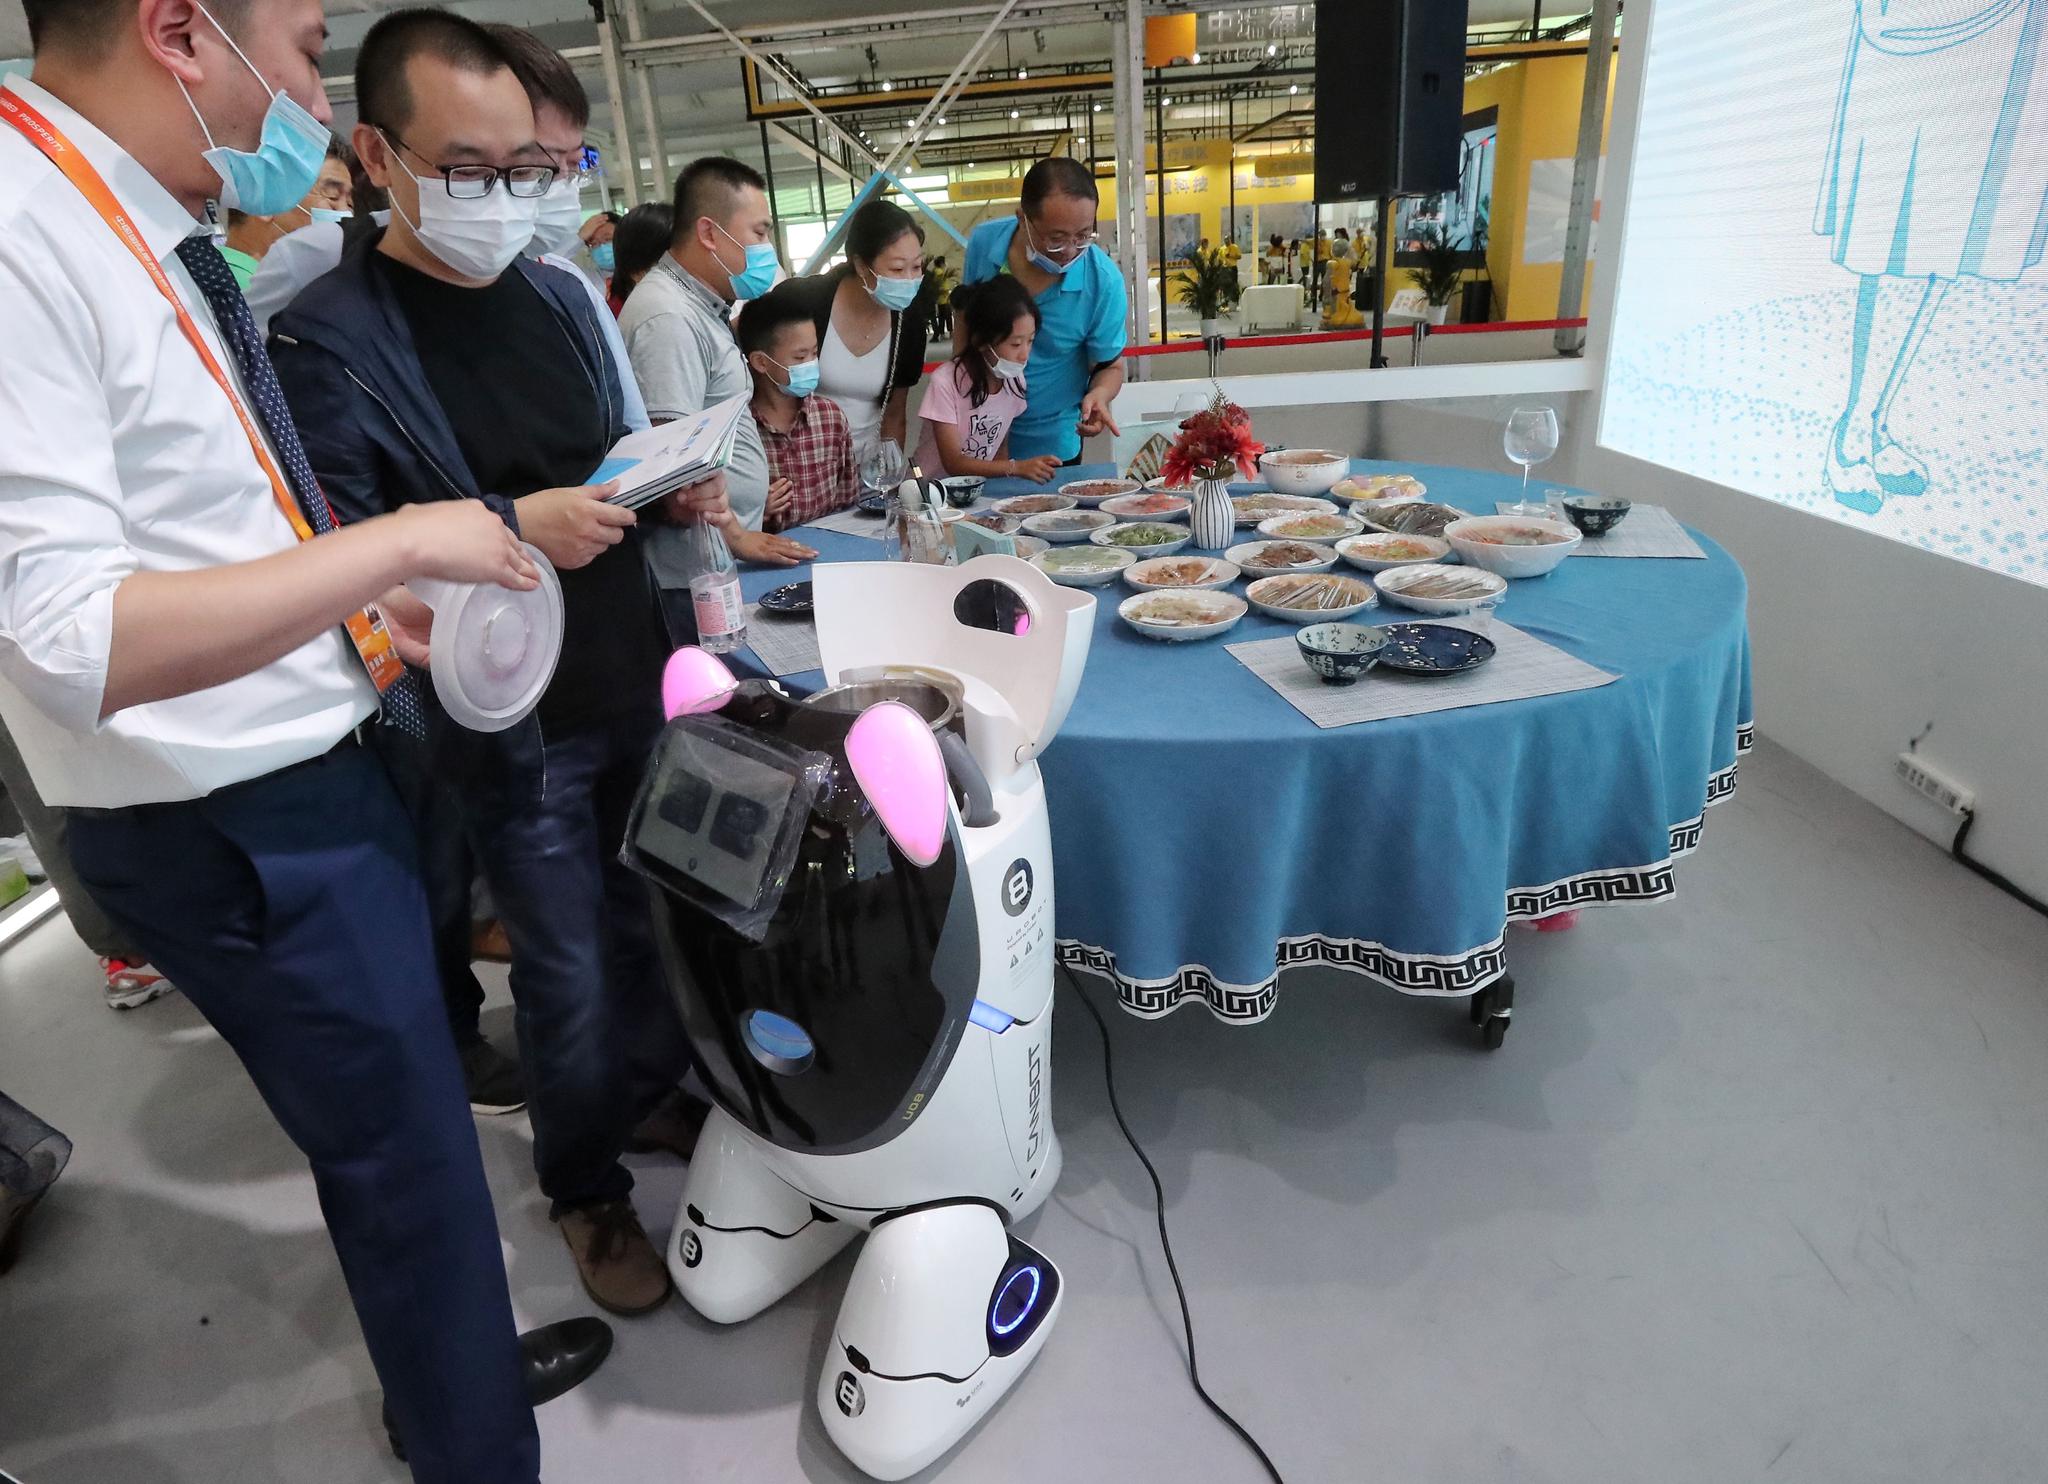  现场工作人员向观众介绍机器人及其制作的菜品。新京报记者 王贵彬 摄